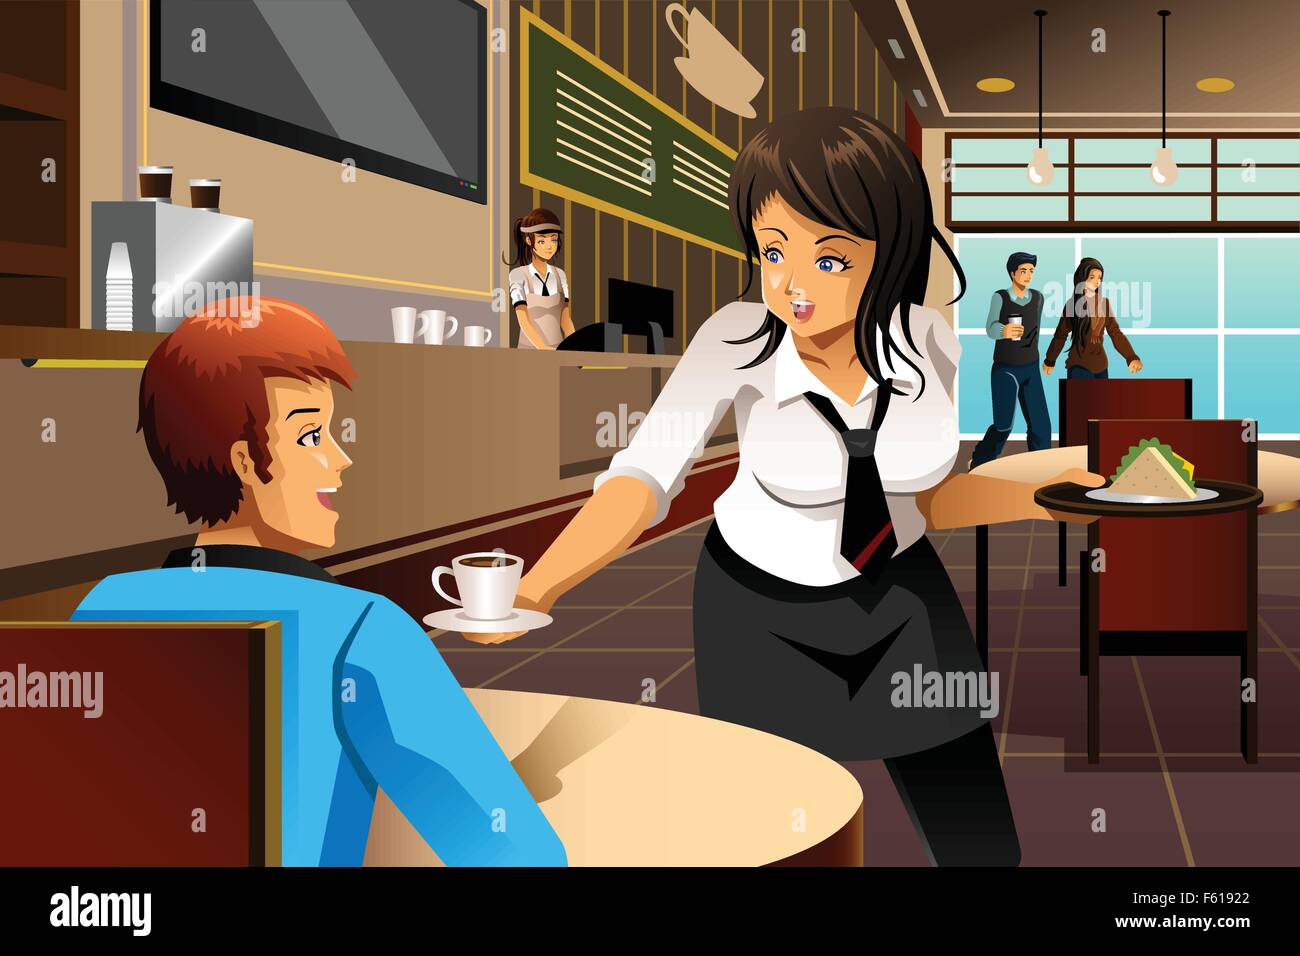 Un vecteur illustration d'une serveuse dans un restaurant servant des  clients Image Vectorielle Stock - Alamy